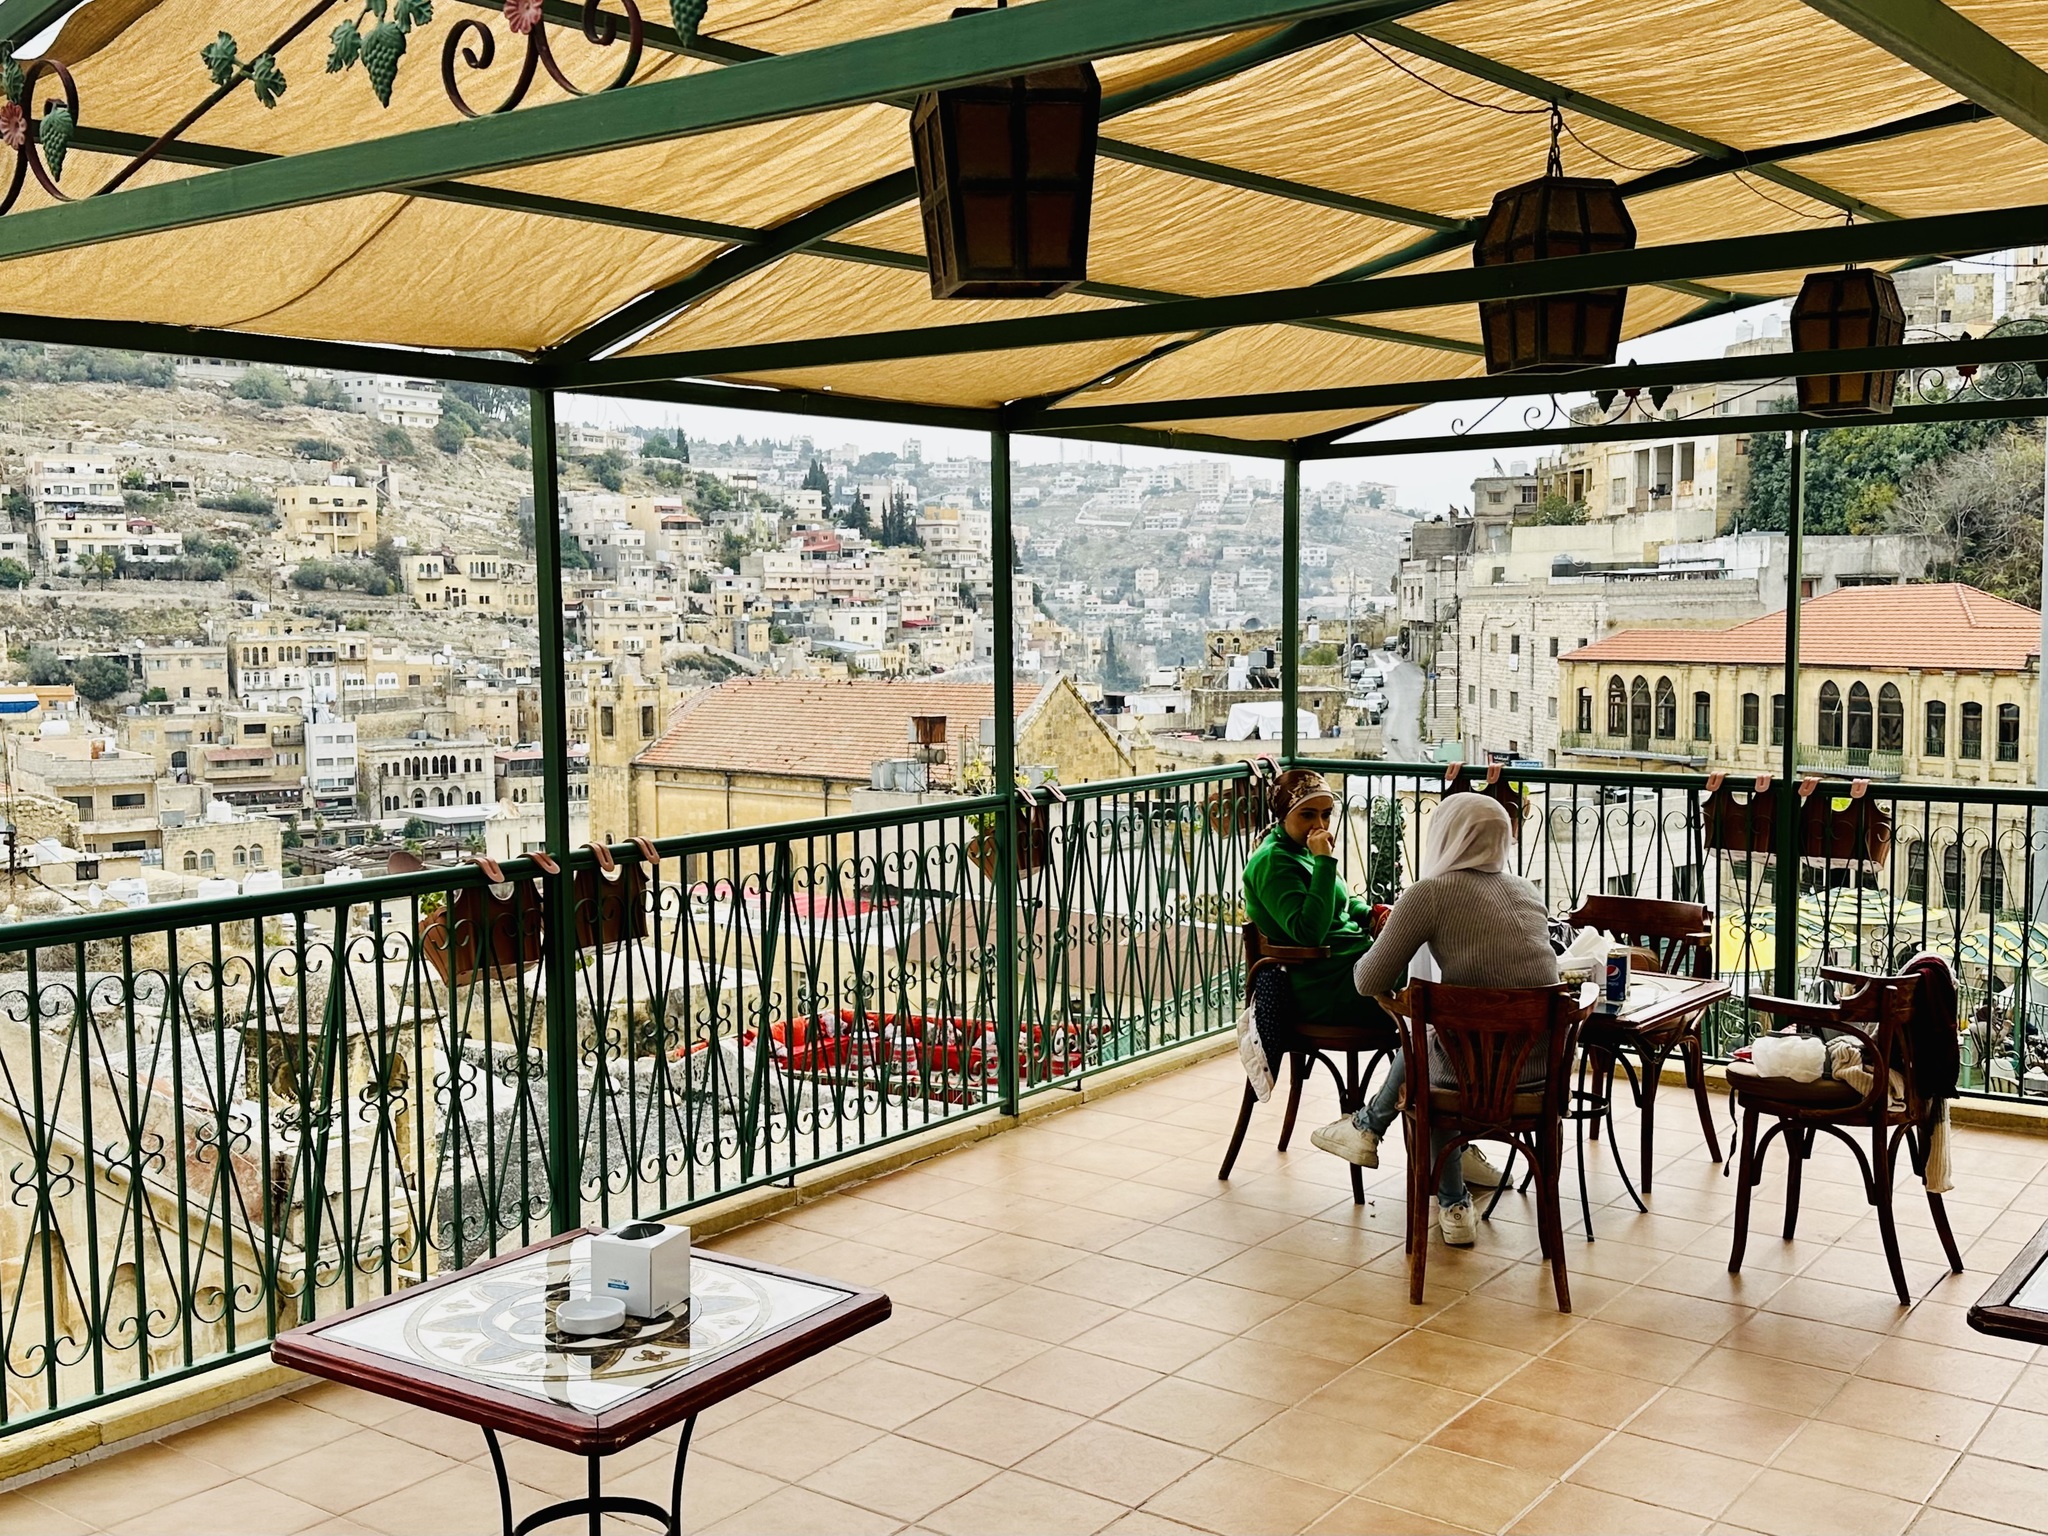 Terrace with views in As-Salt, Jordan.